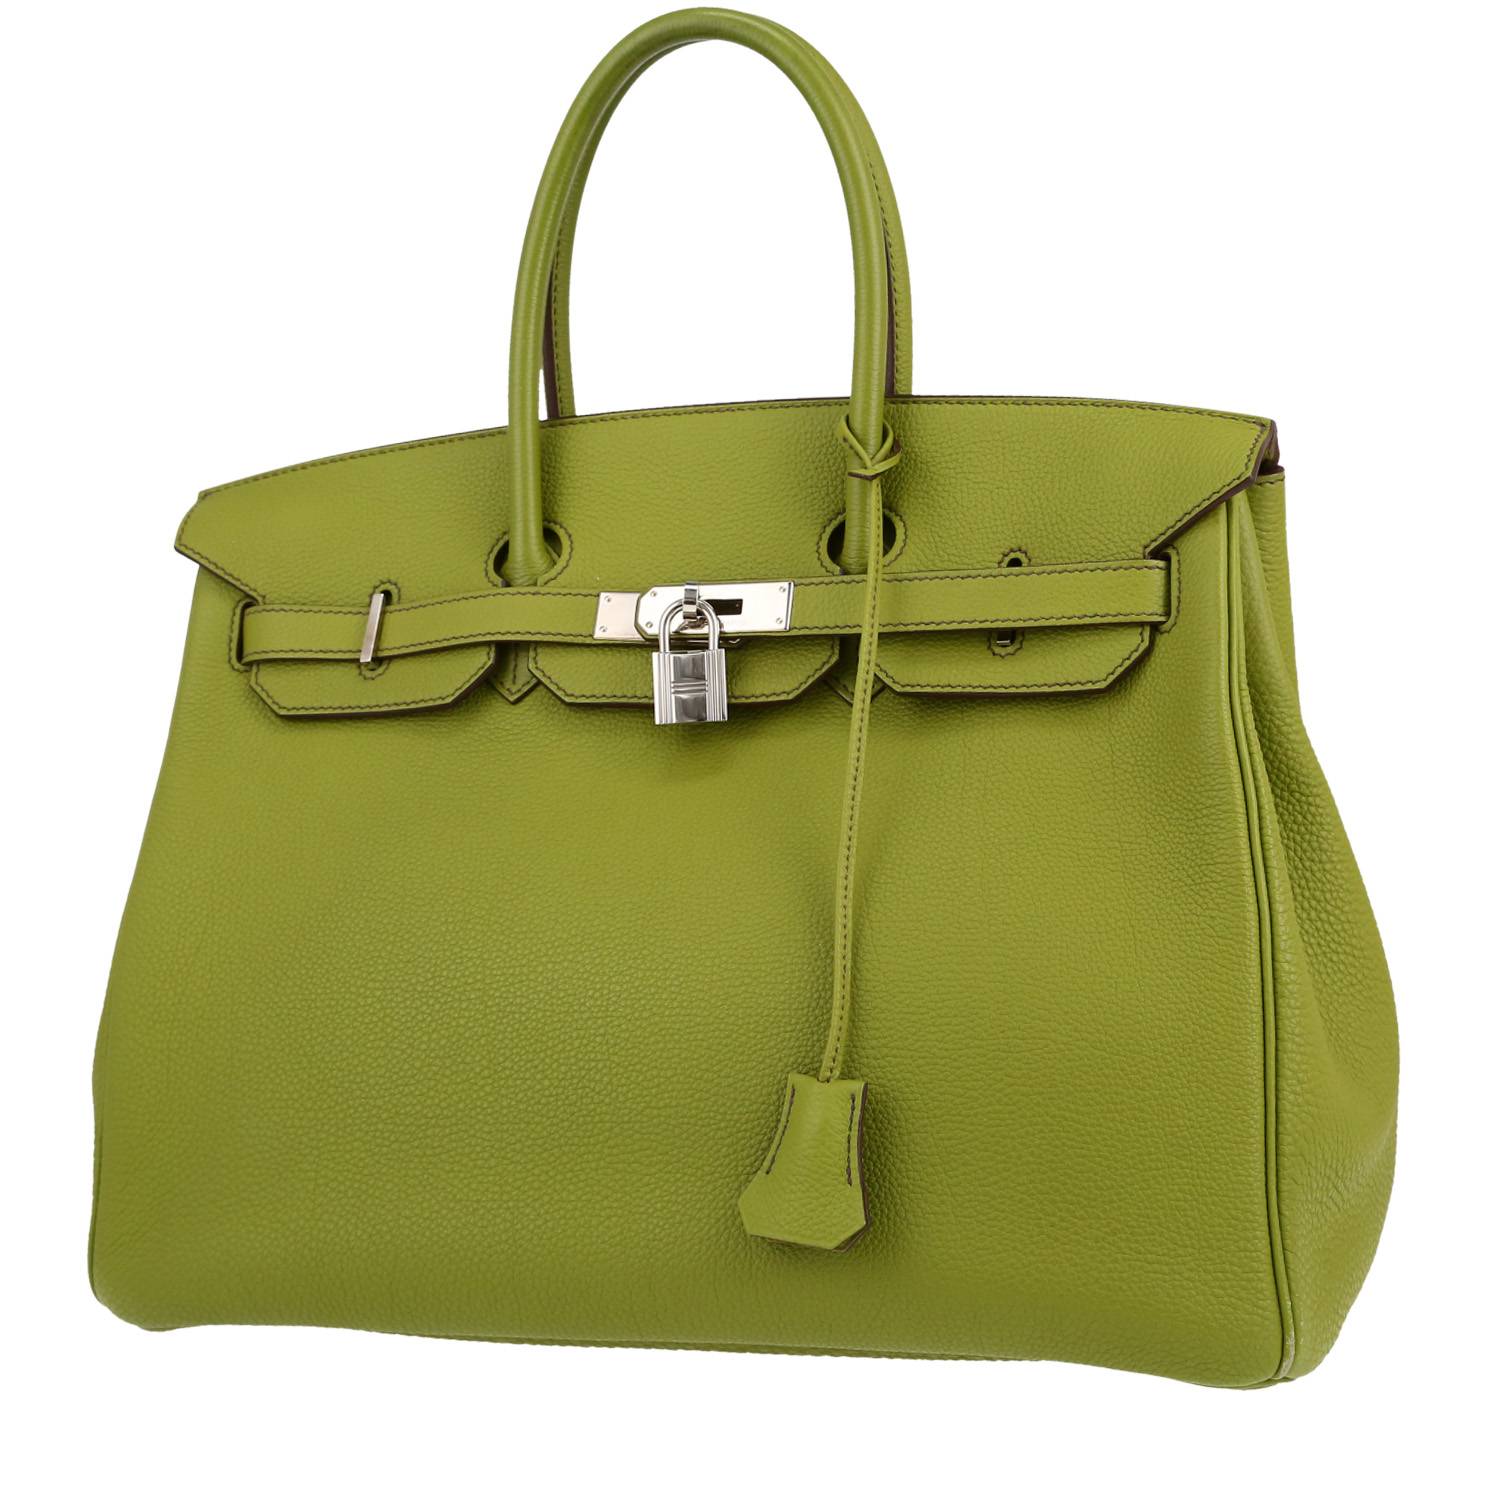 Birkin 35 cm Handbag In Anise Togo Leather